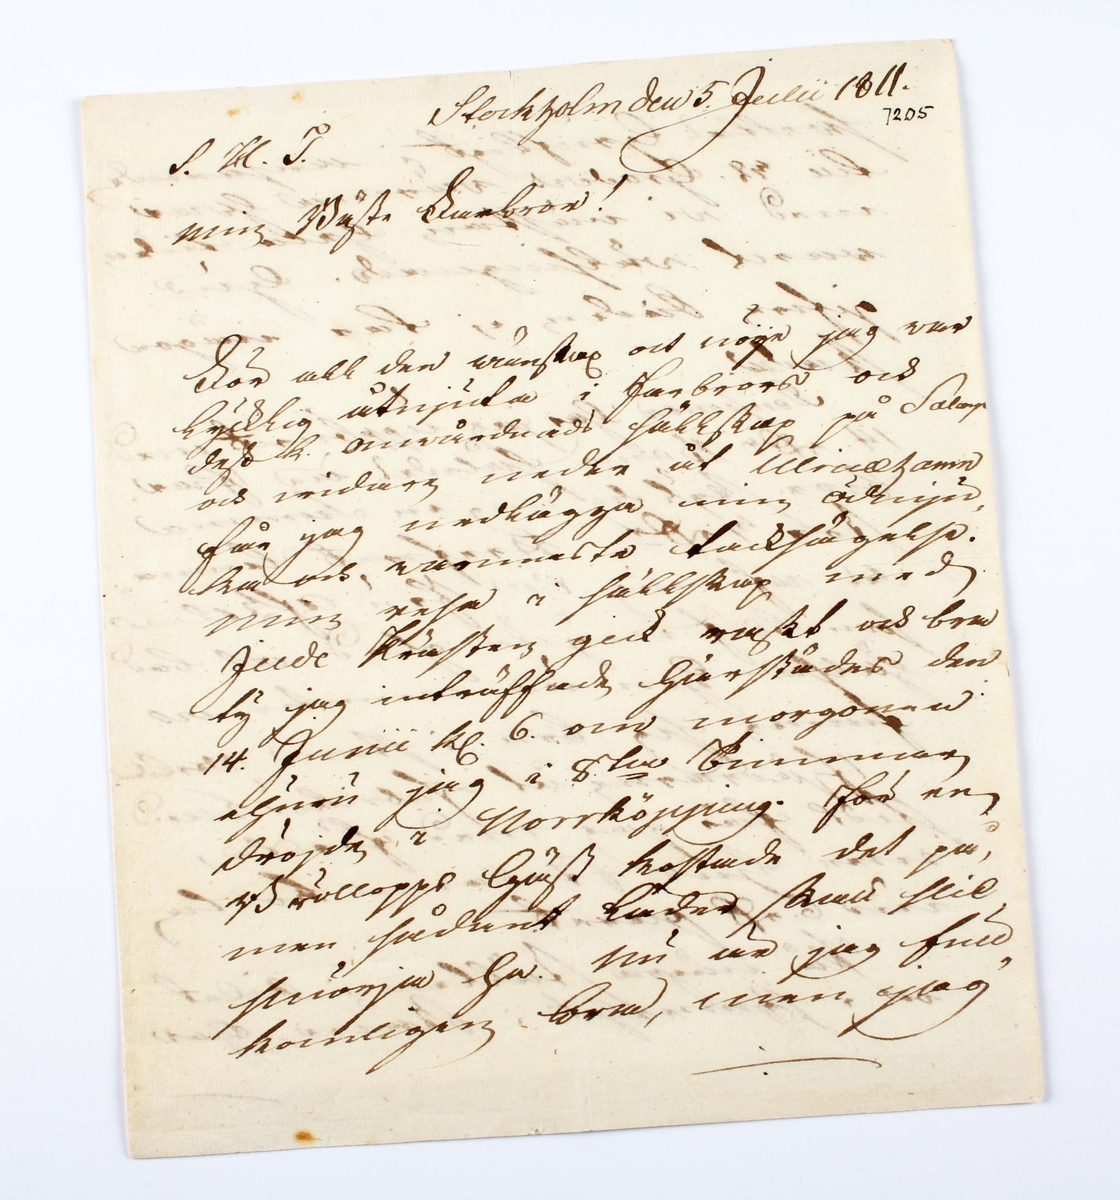 Brev i form av grågrönt, vikt pappersark med handskriven svart text. Skrivet av den då, bekante riksdagsmannen Anders Danielsson, den 5 juli 1811, till fänrik Ternstedt på Salarp.